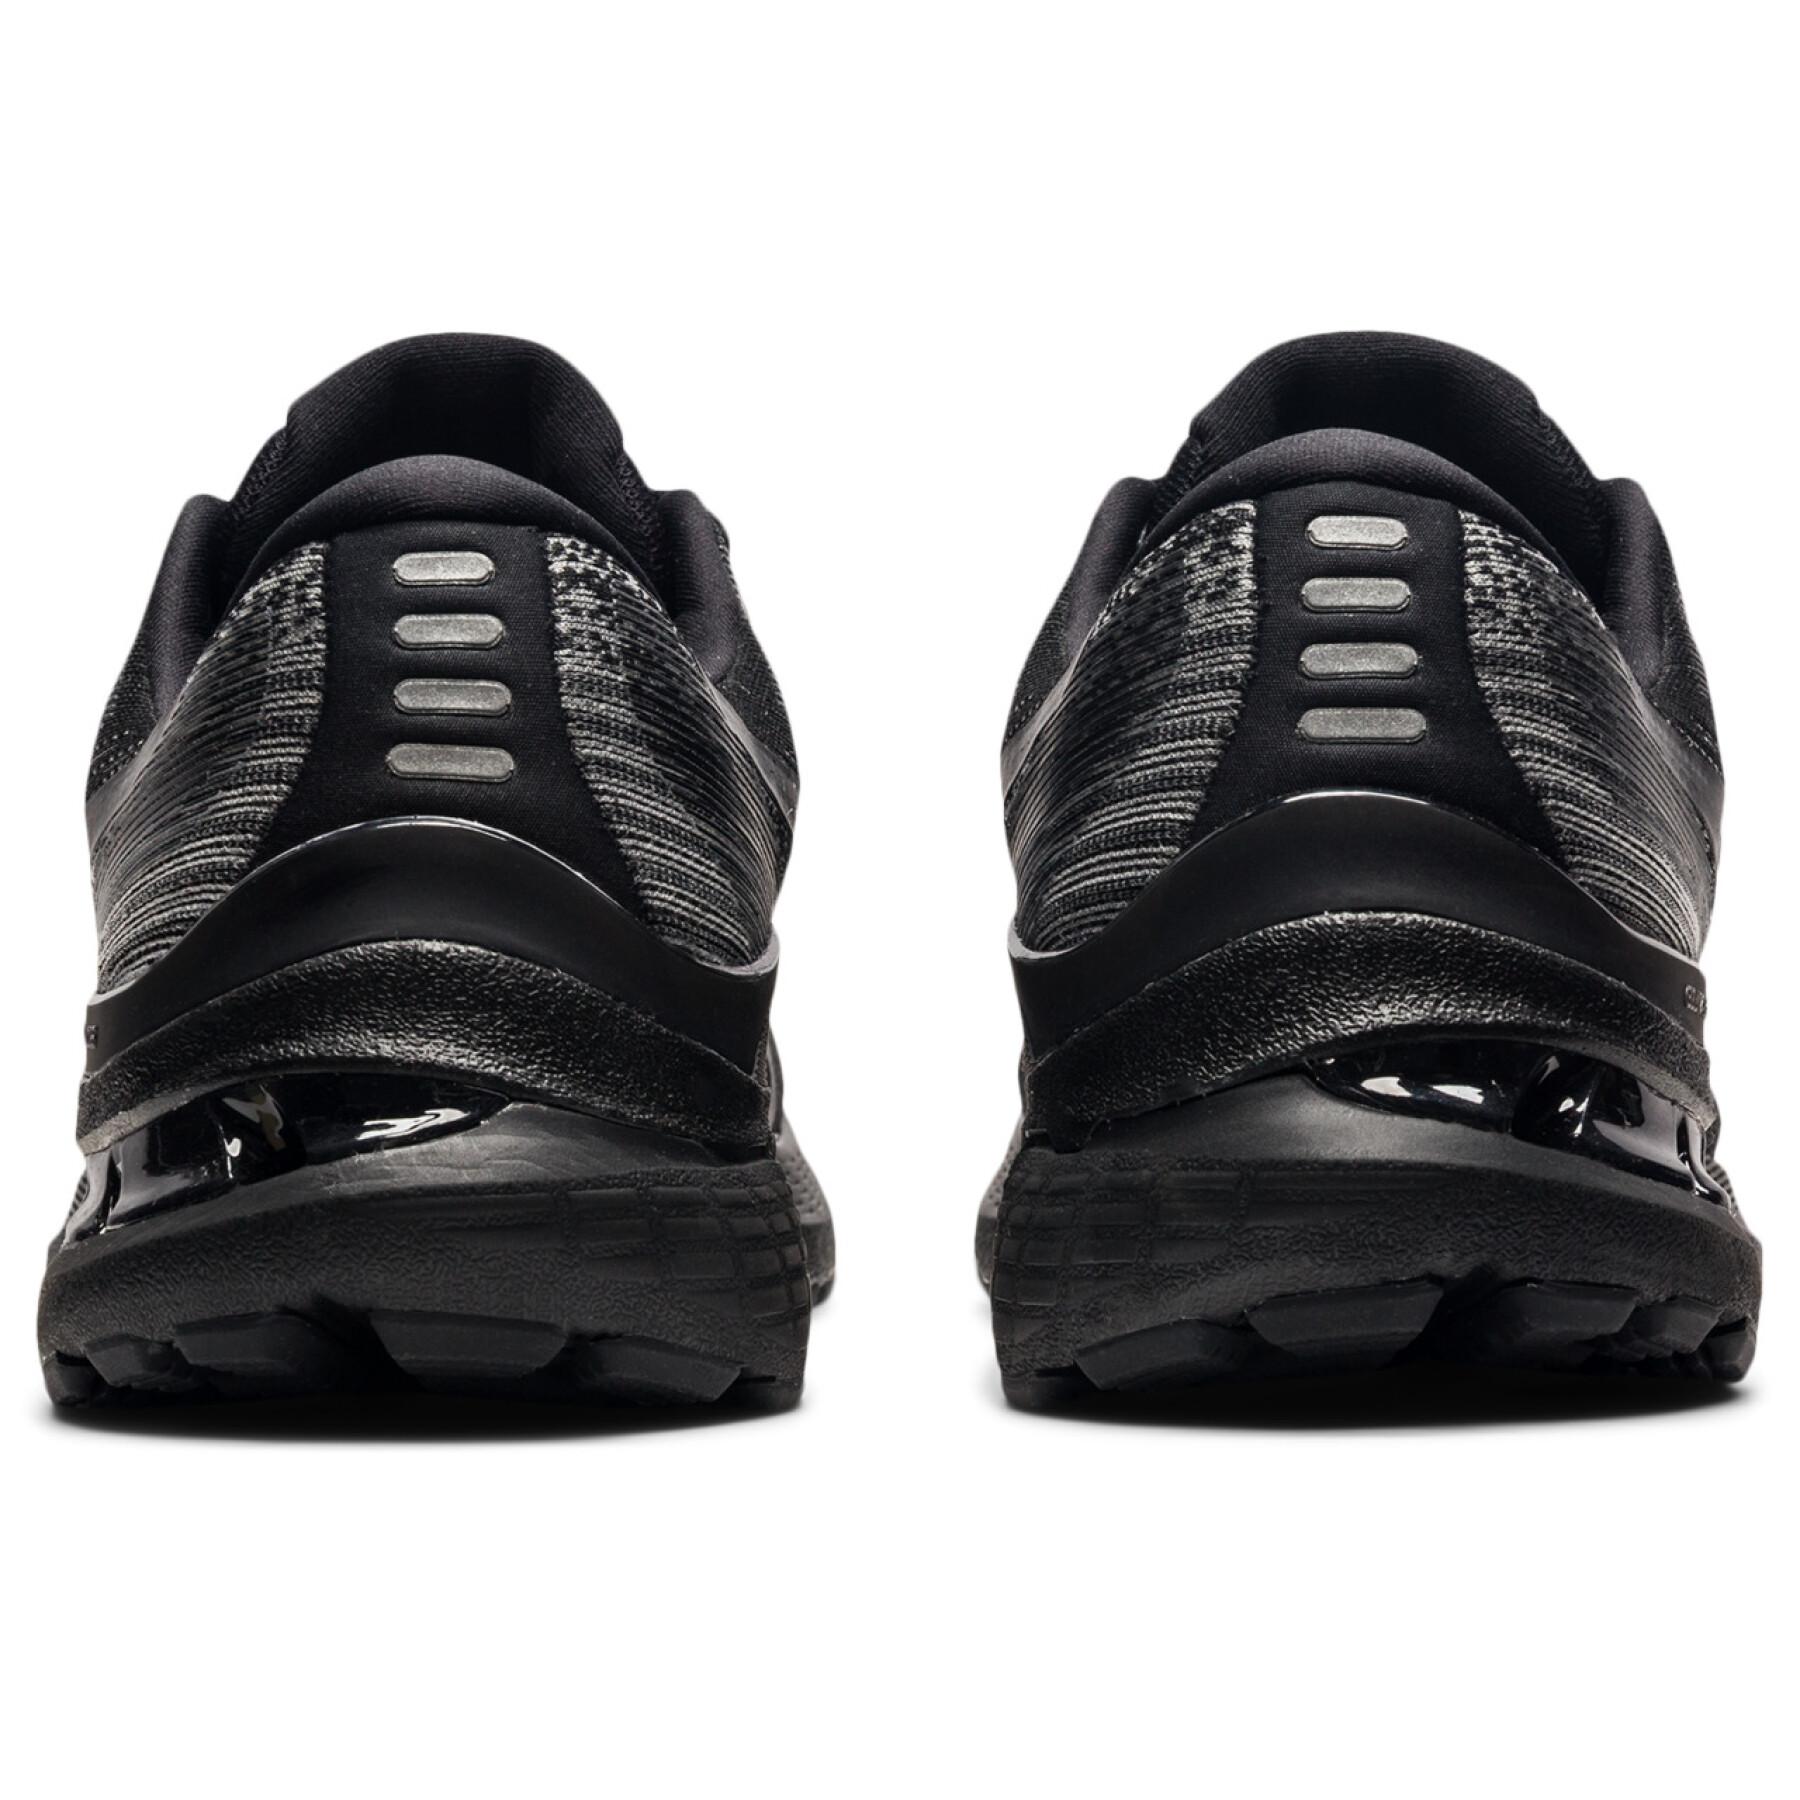 Schuhe Asics Gel-Kayano 28